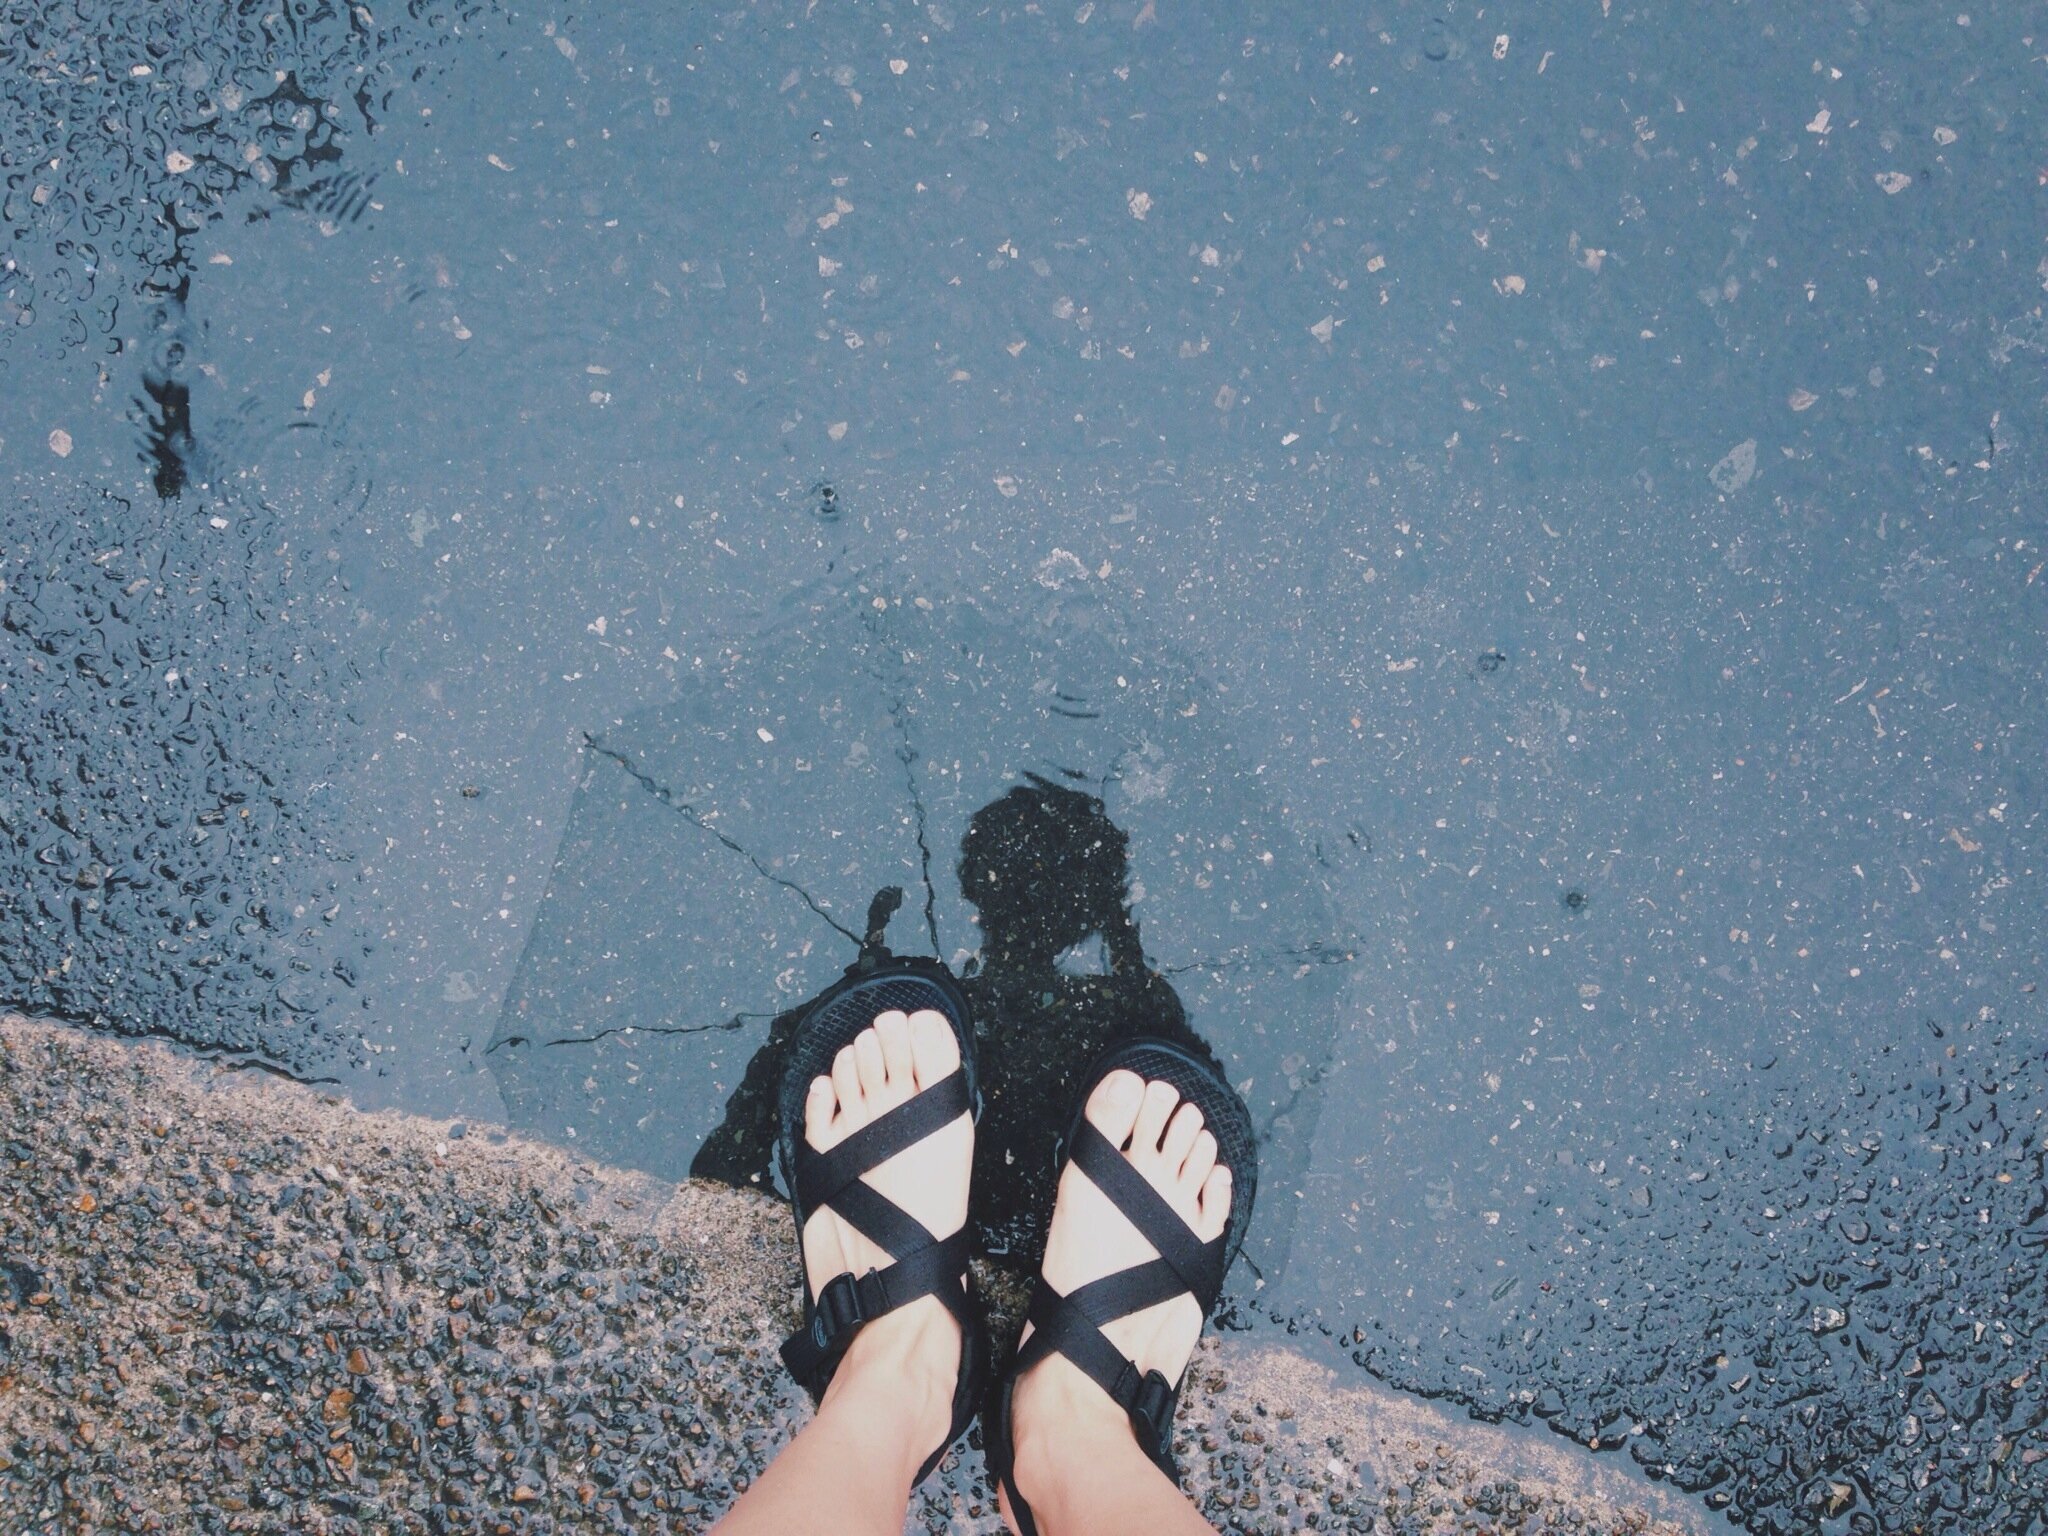 wearing birkenstocks in the rain